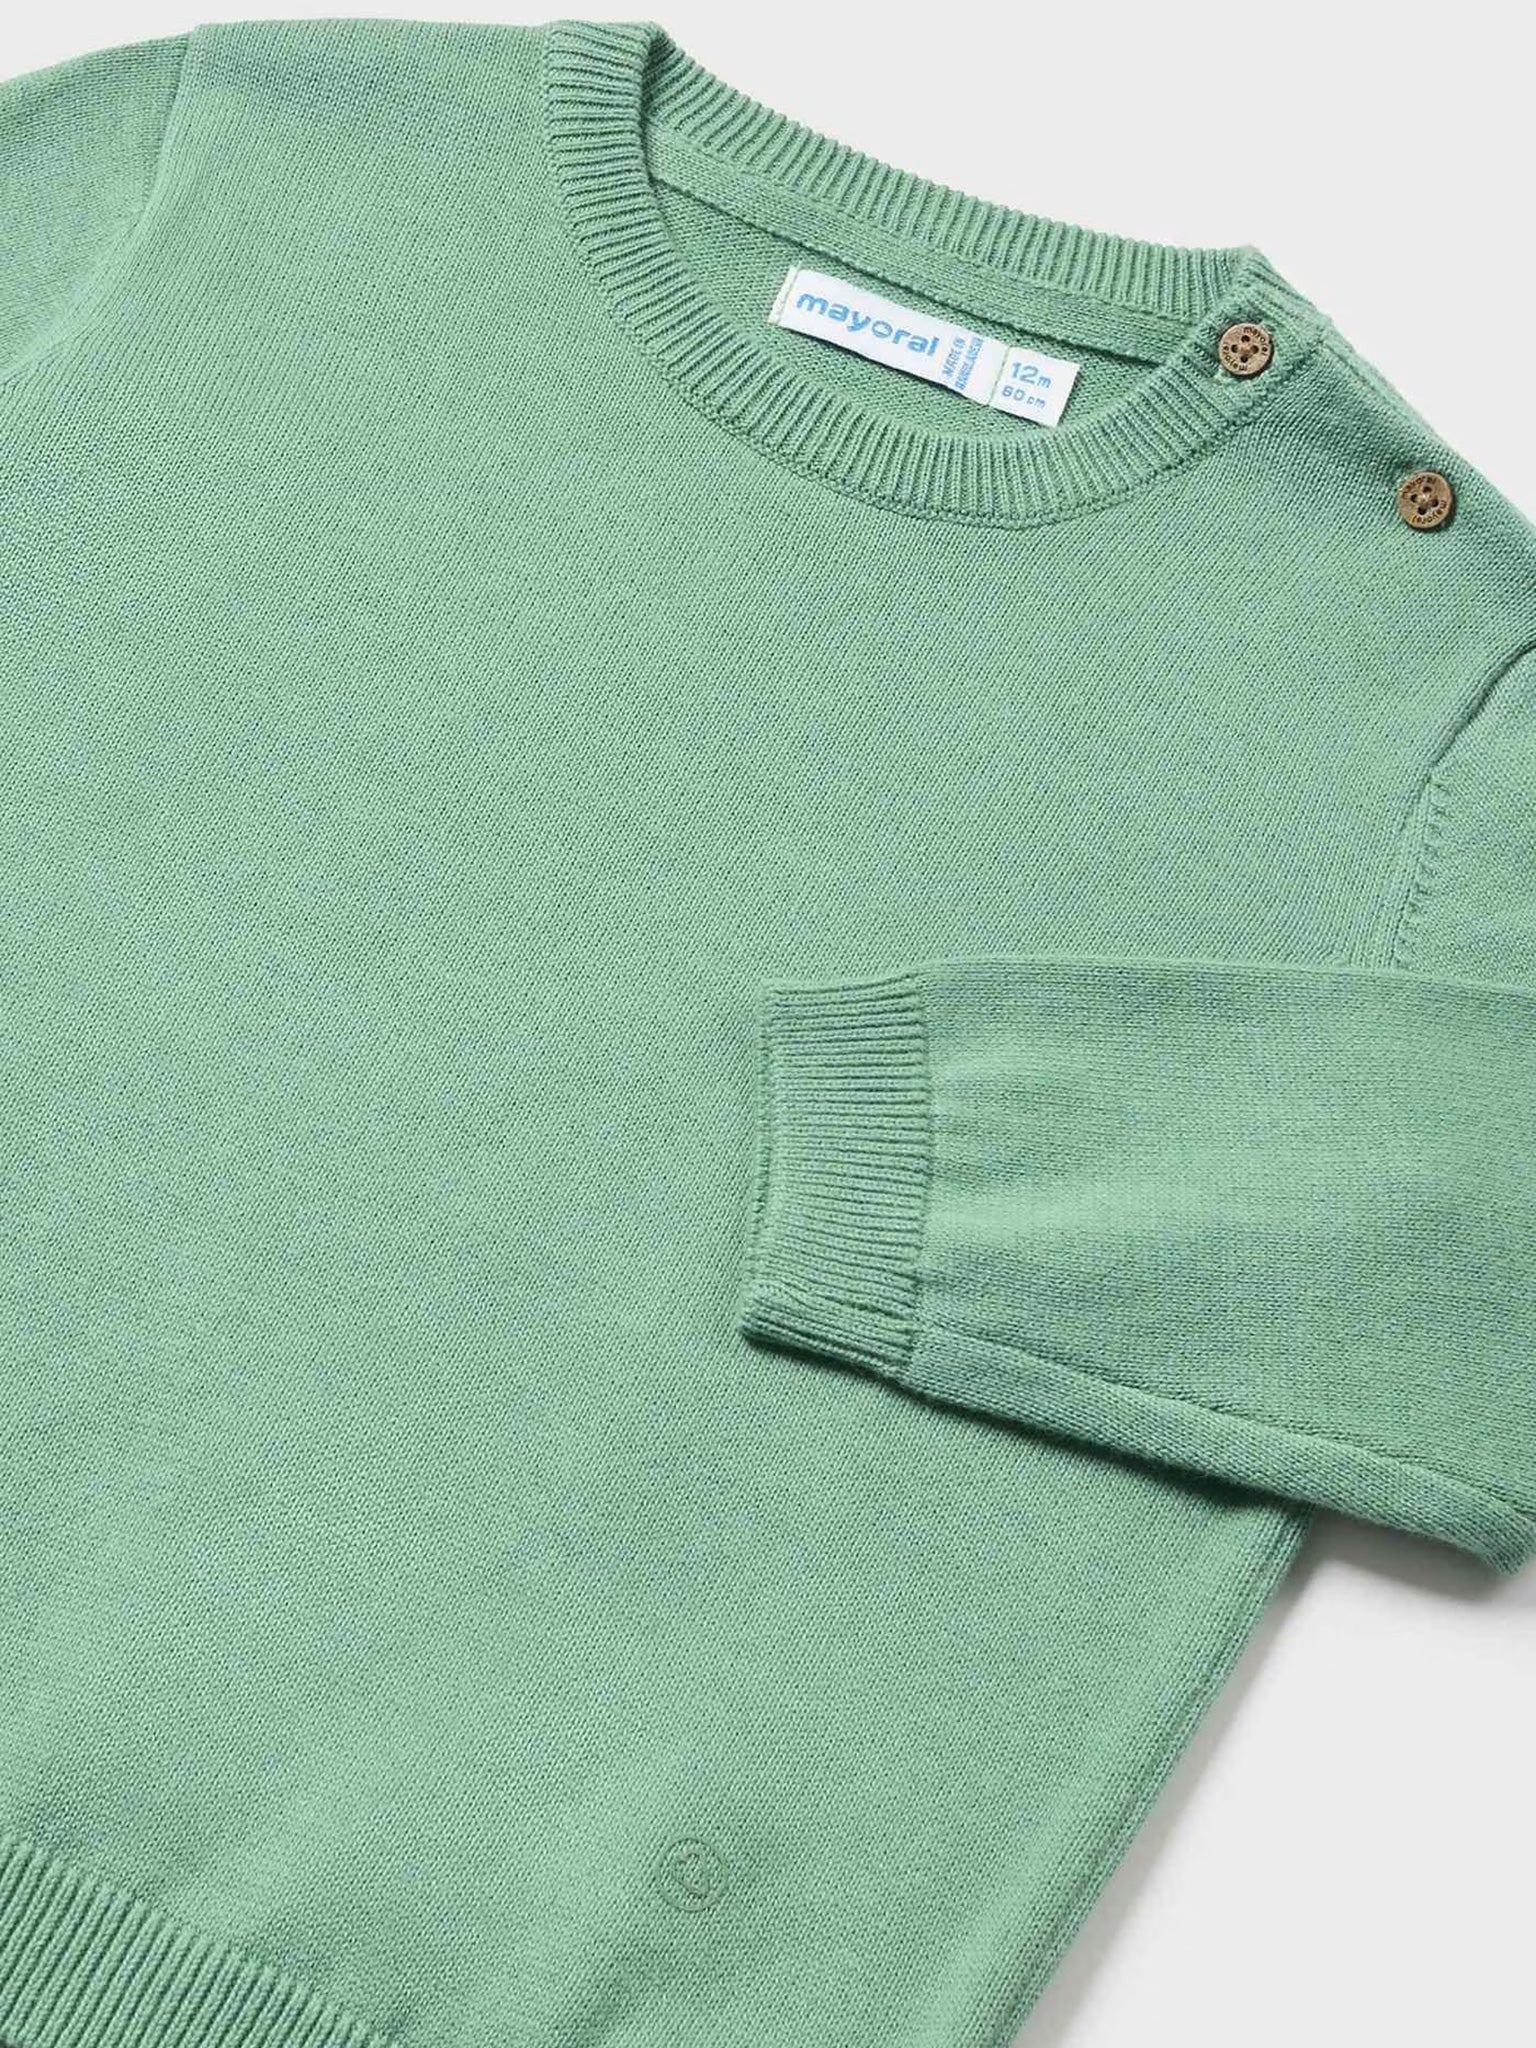 Βρεφική μπλούζα λεπτή πλέξη ζέρσεϋ Better Cotton 24-00303-043 | 24-00303-043